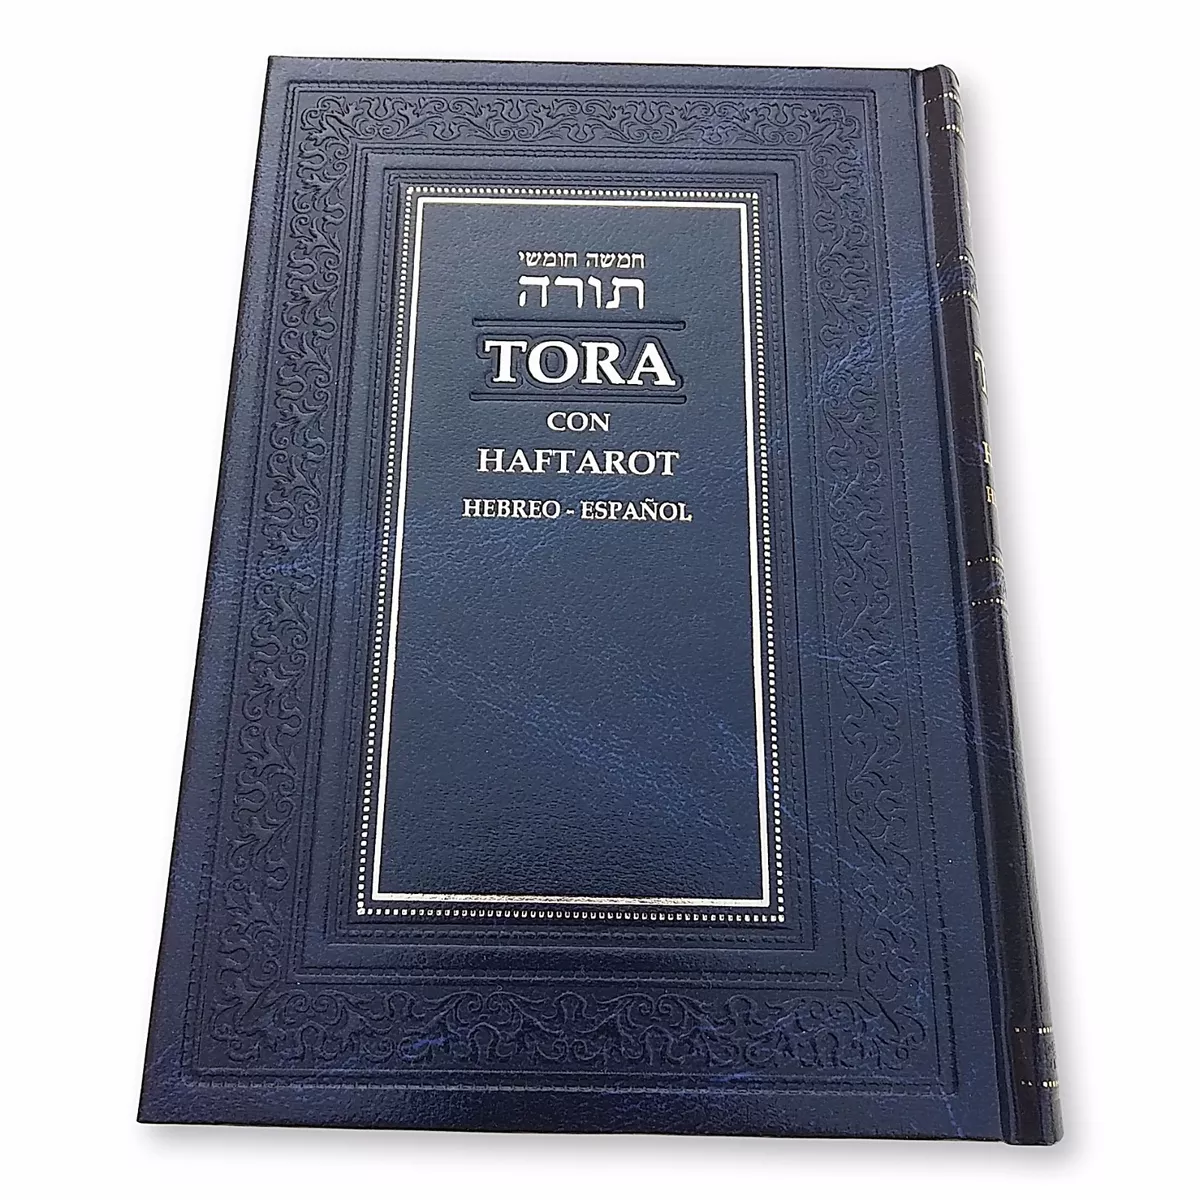 Gruñón Descuido Fondos Spanish &amp; Hebrew Torah Libro Oración Judío Española Pentateuco | eBay